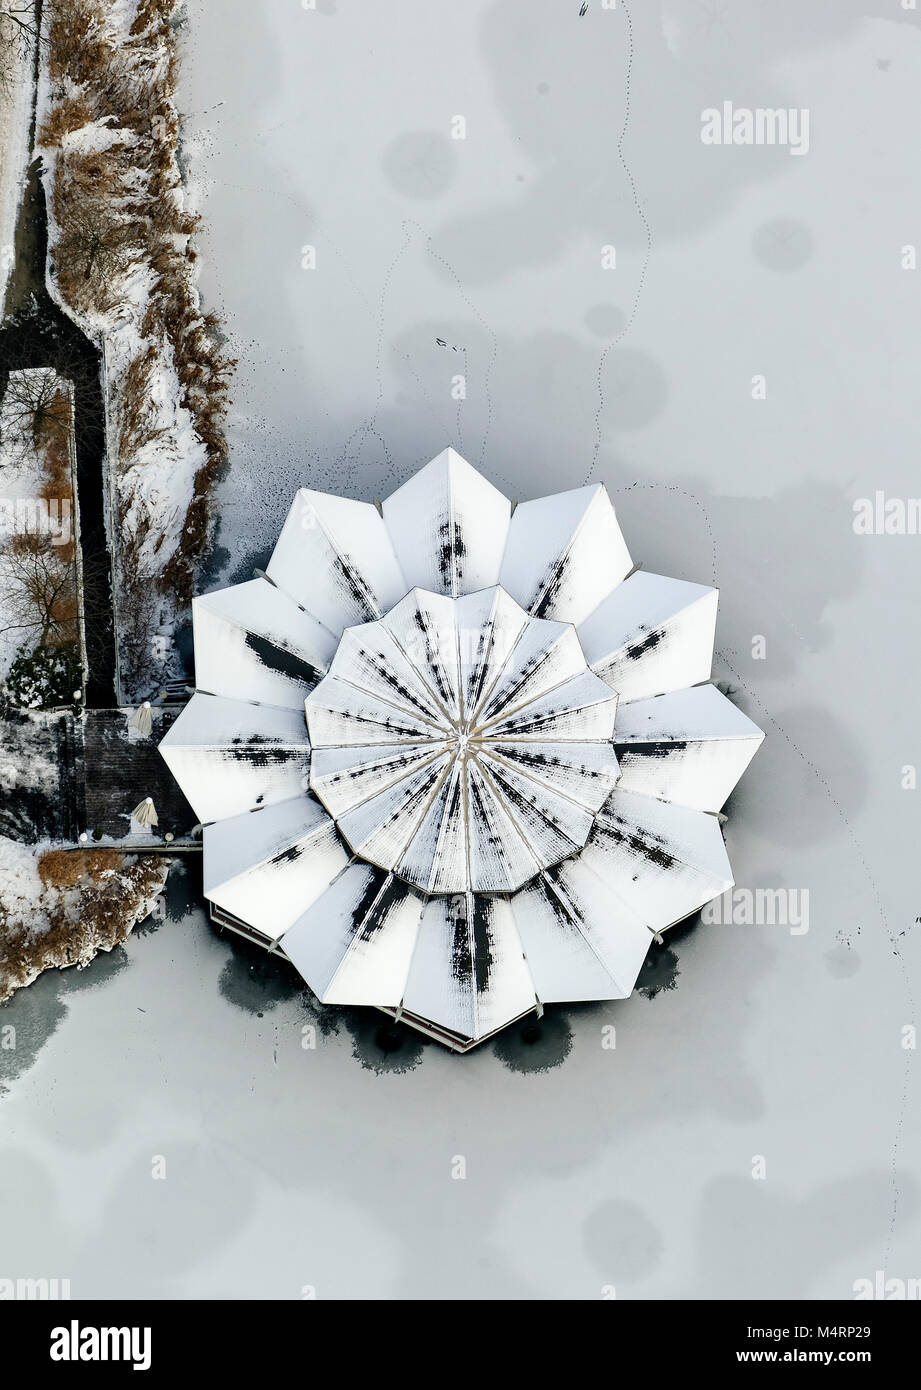 Antenna, Bush Mühlenhof, Schürmanns nel parco, rotonda coperta di neve sul tetto, Westfalia Parco in inverno, Dortmund, Ruhr, Renania settentrionale-Vestfalia, Germania, Euro Foto Stock